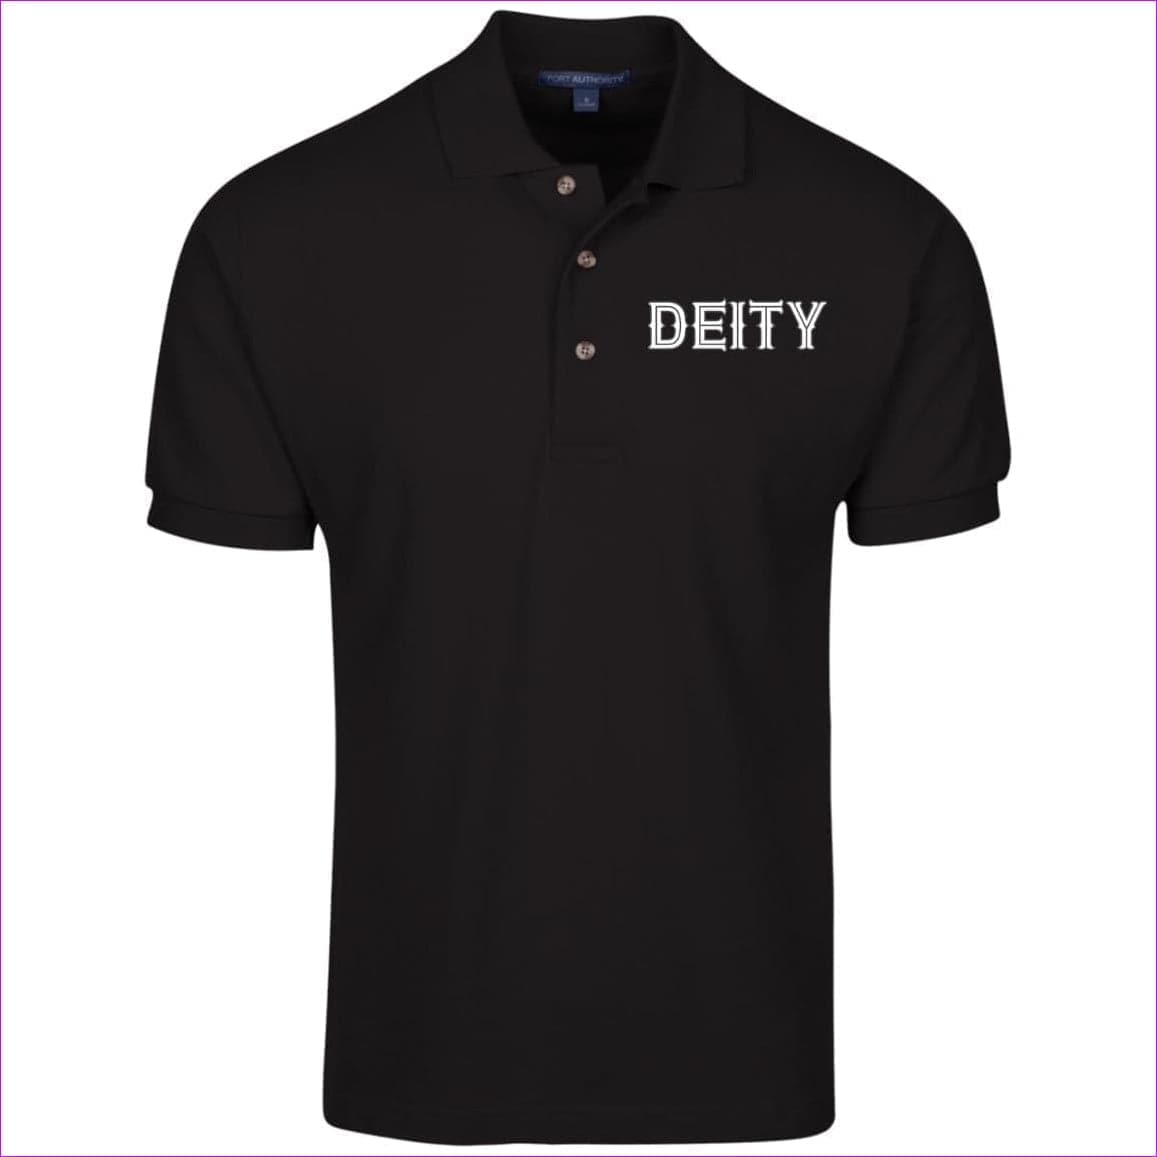 Black Deity Cotton Pique Knit Polo - men's polo shirt at TFC&H Co.